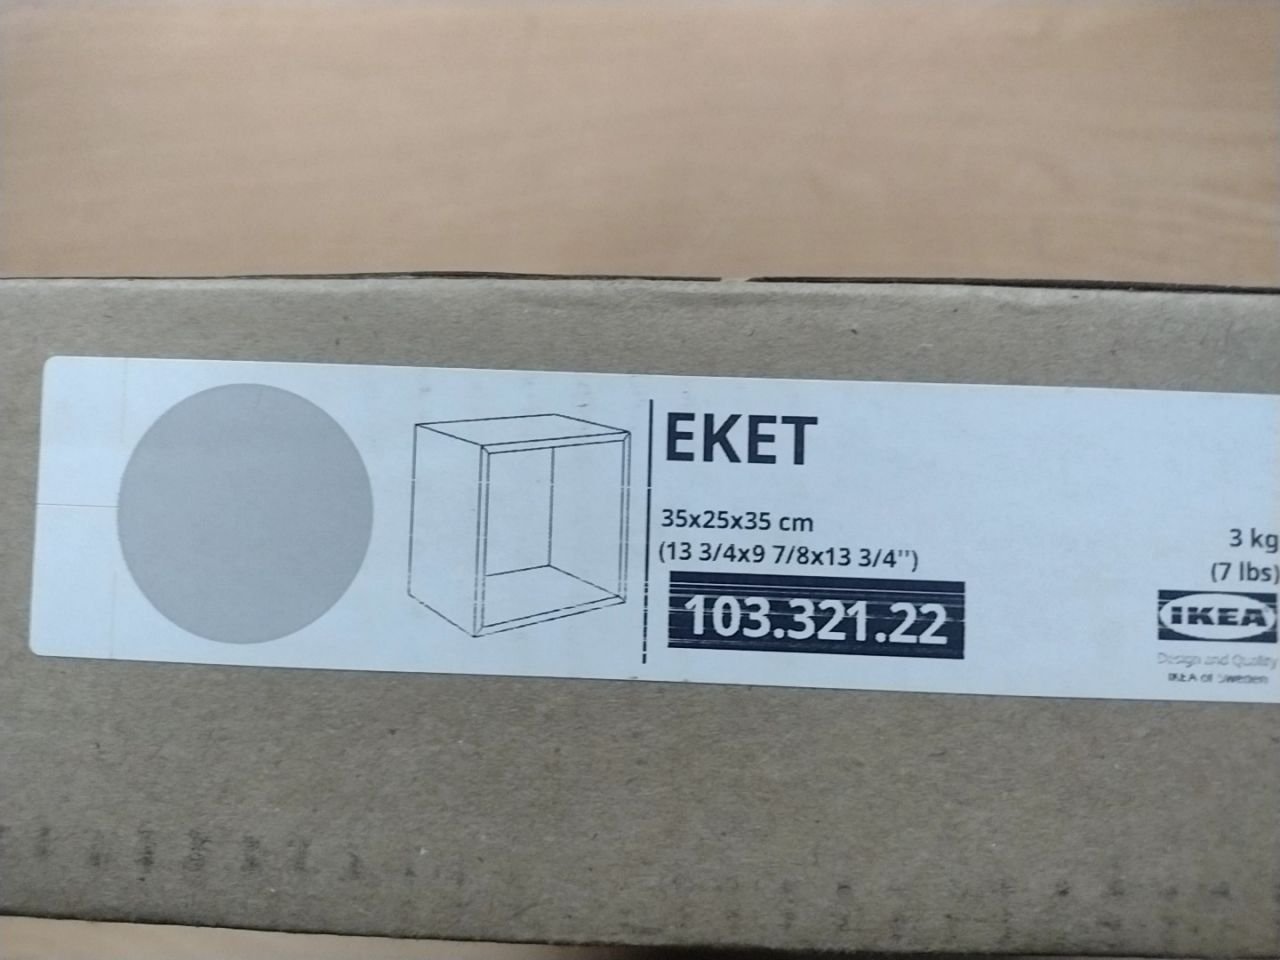 Skříňka Ikea EKET